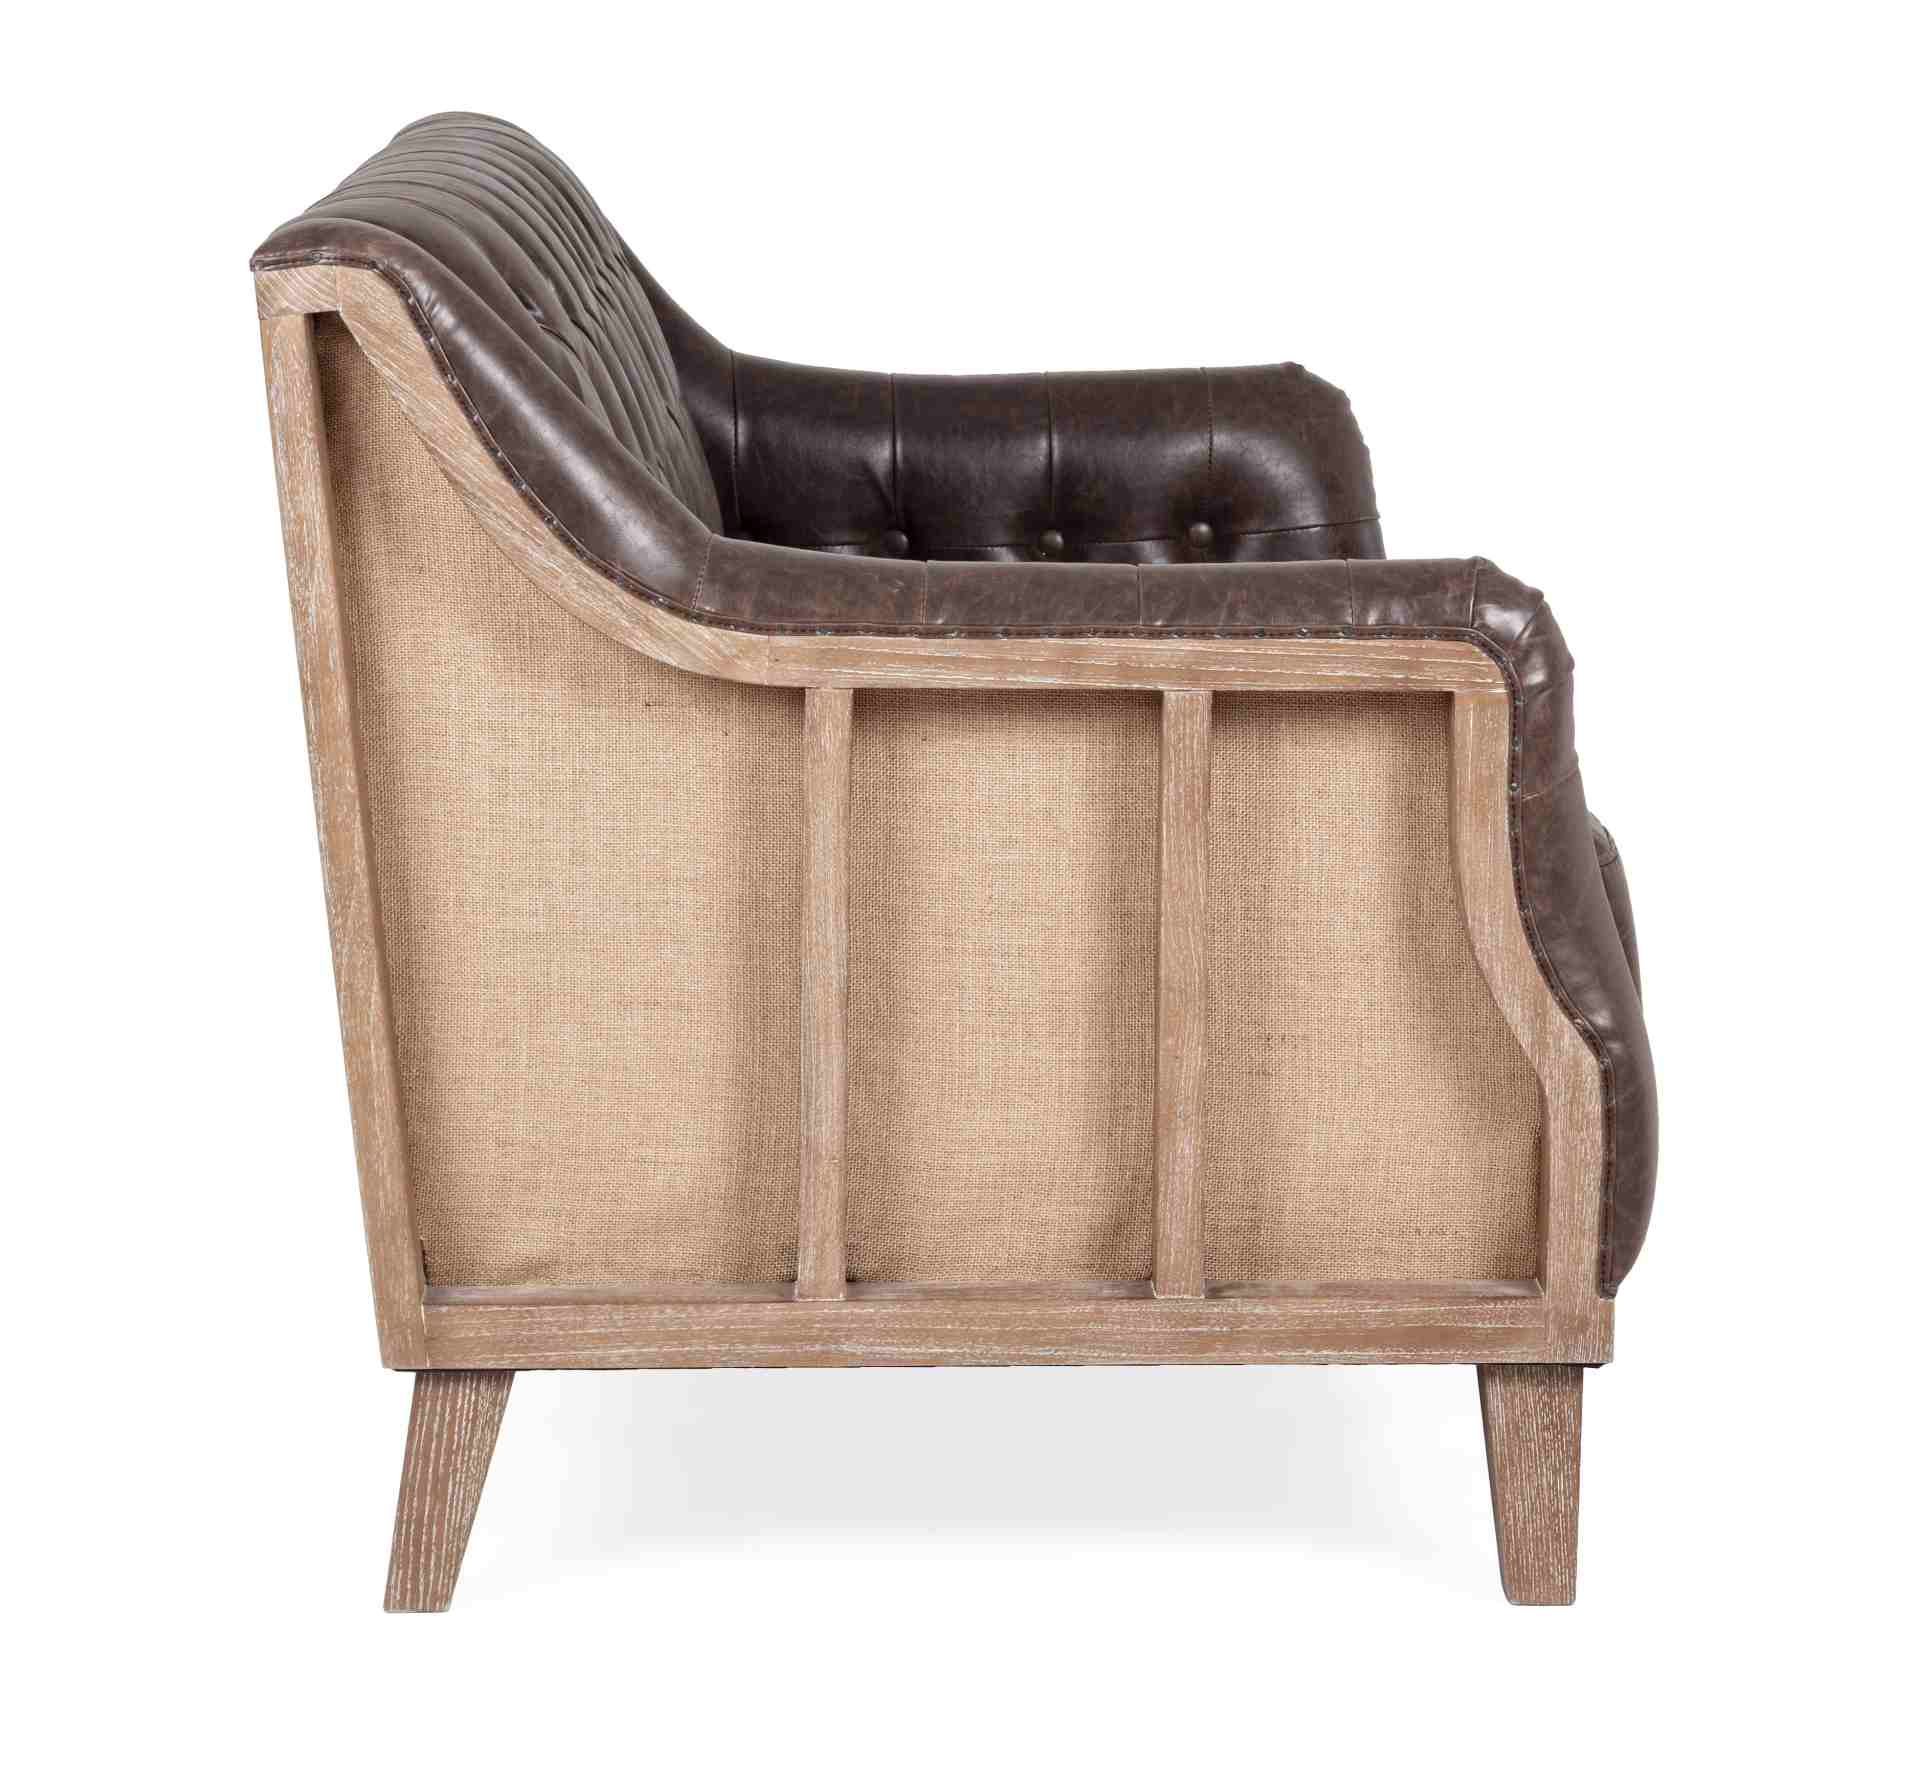 Das Sofa Raymond überzeugt mit seinem klassischen Design. Gefertigt wurde es aus Kunstleder, welches einen braunen Farbton besitzt. Das Gestell ist aus Eschenholz und hat eine natürliche Farbe. Das Sofa ist in der Ausführung als 2-Sitzer. Die Breite beträ